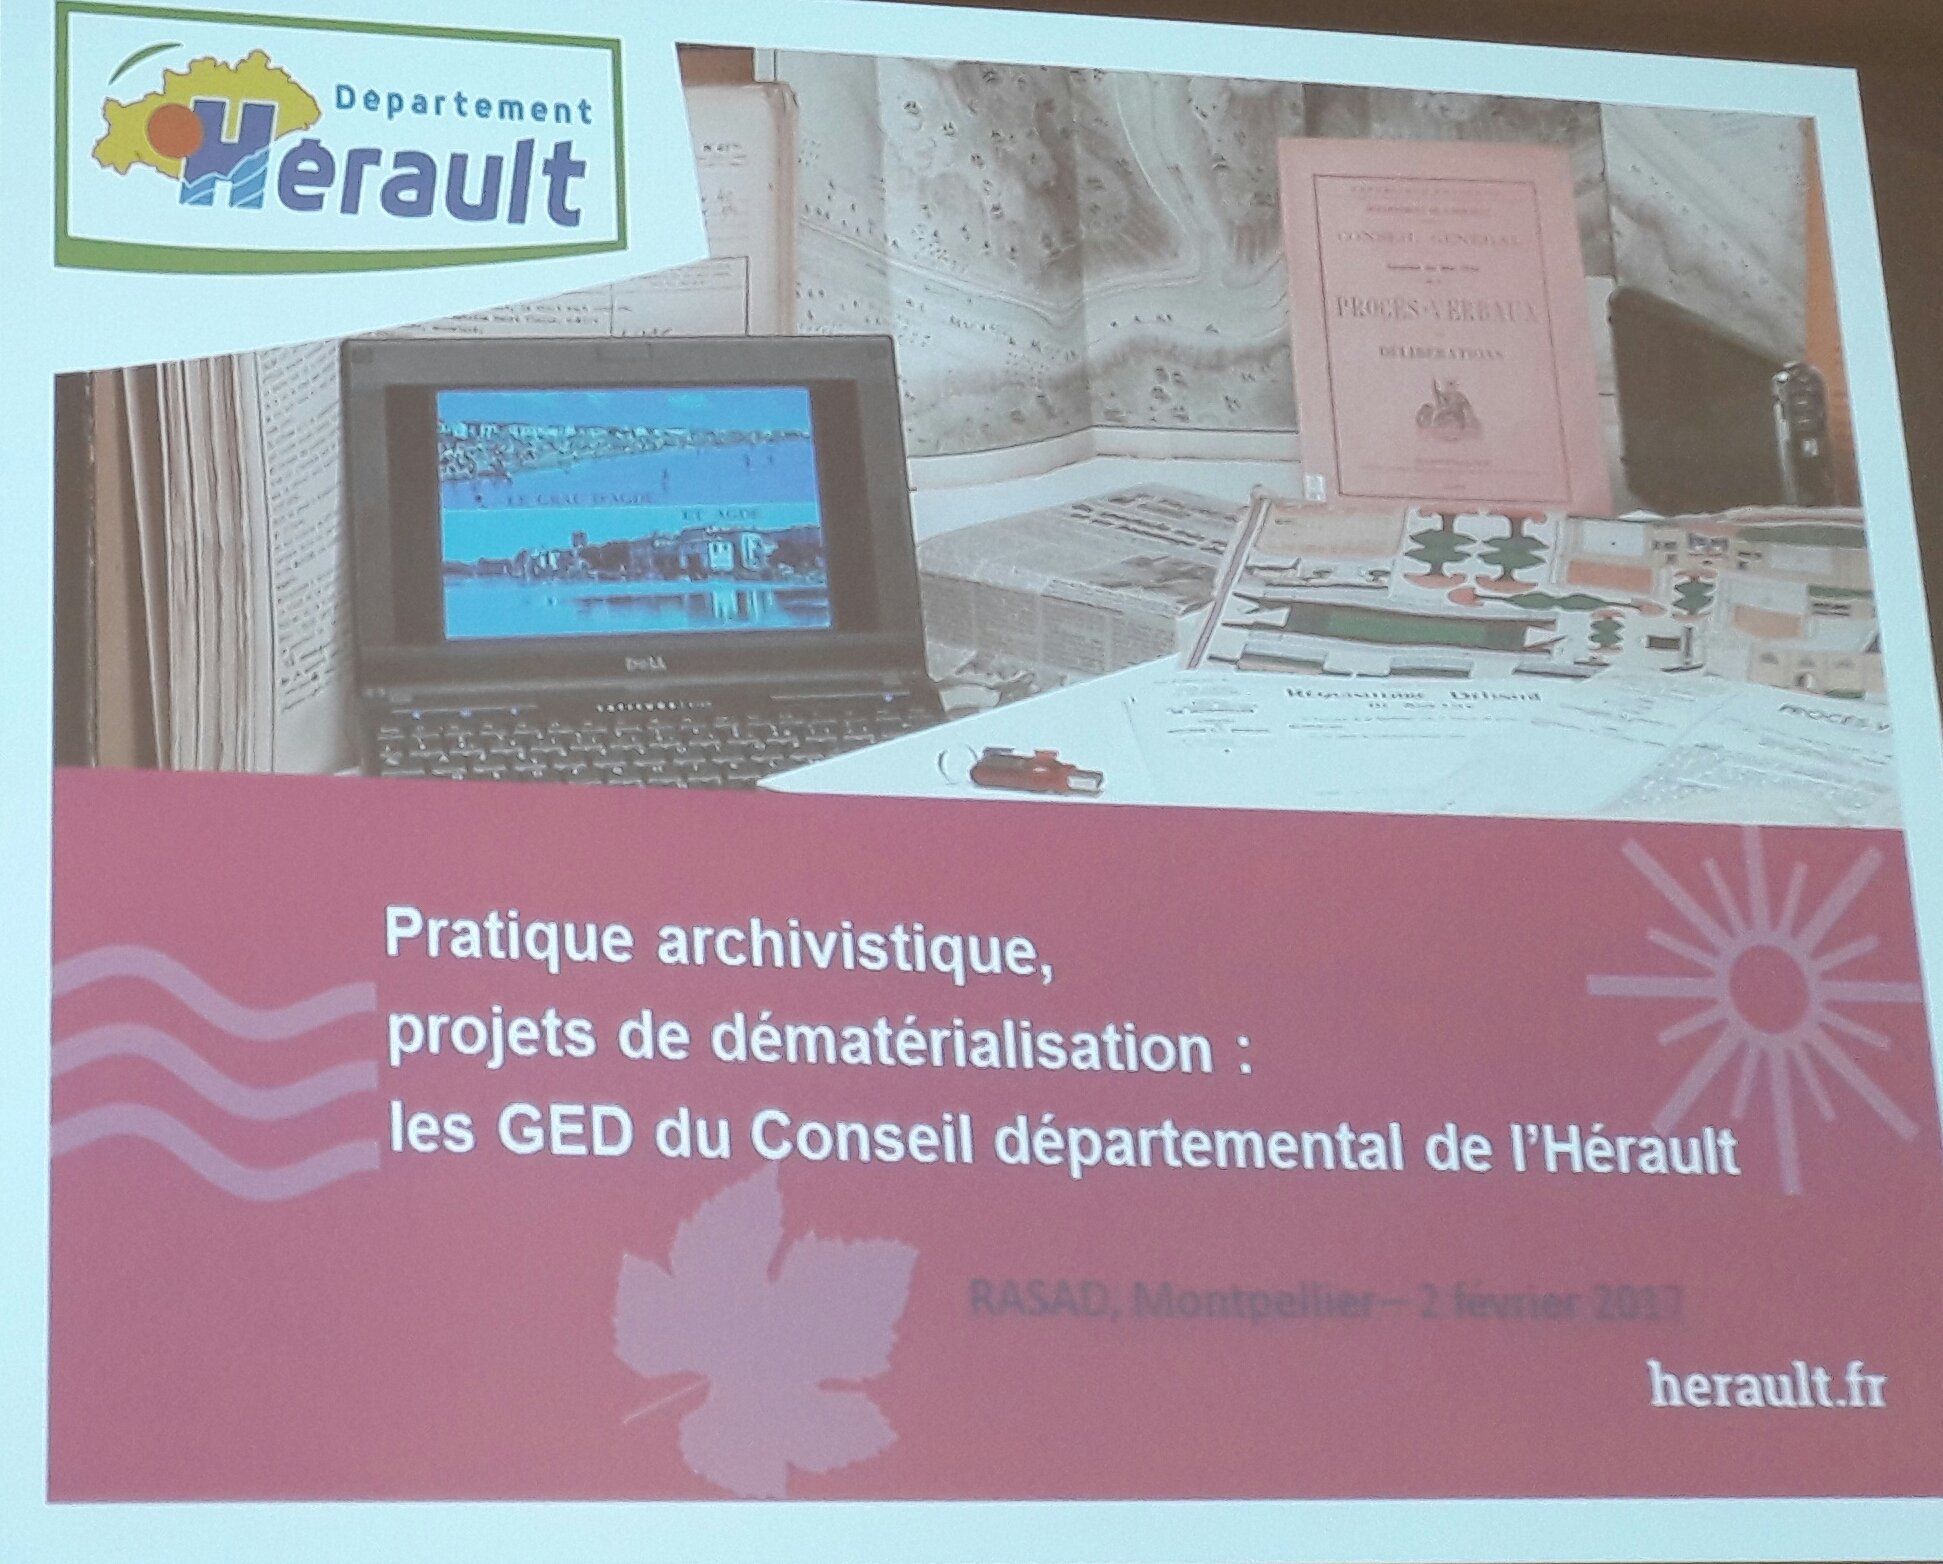 #AAFrasad17 Pierre Jestin, Archives de l'Hérault : pratique archivistique et projets de dématérialisation, création de plusieurs GED https://t.co/drZwVCtI4q